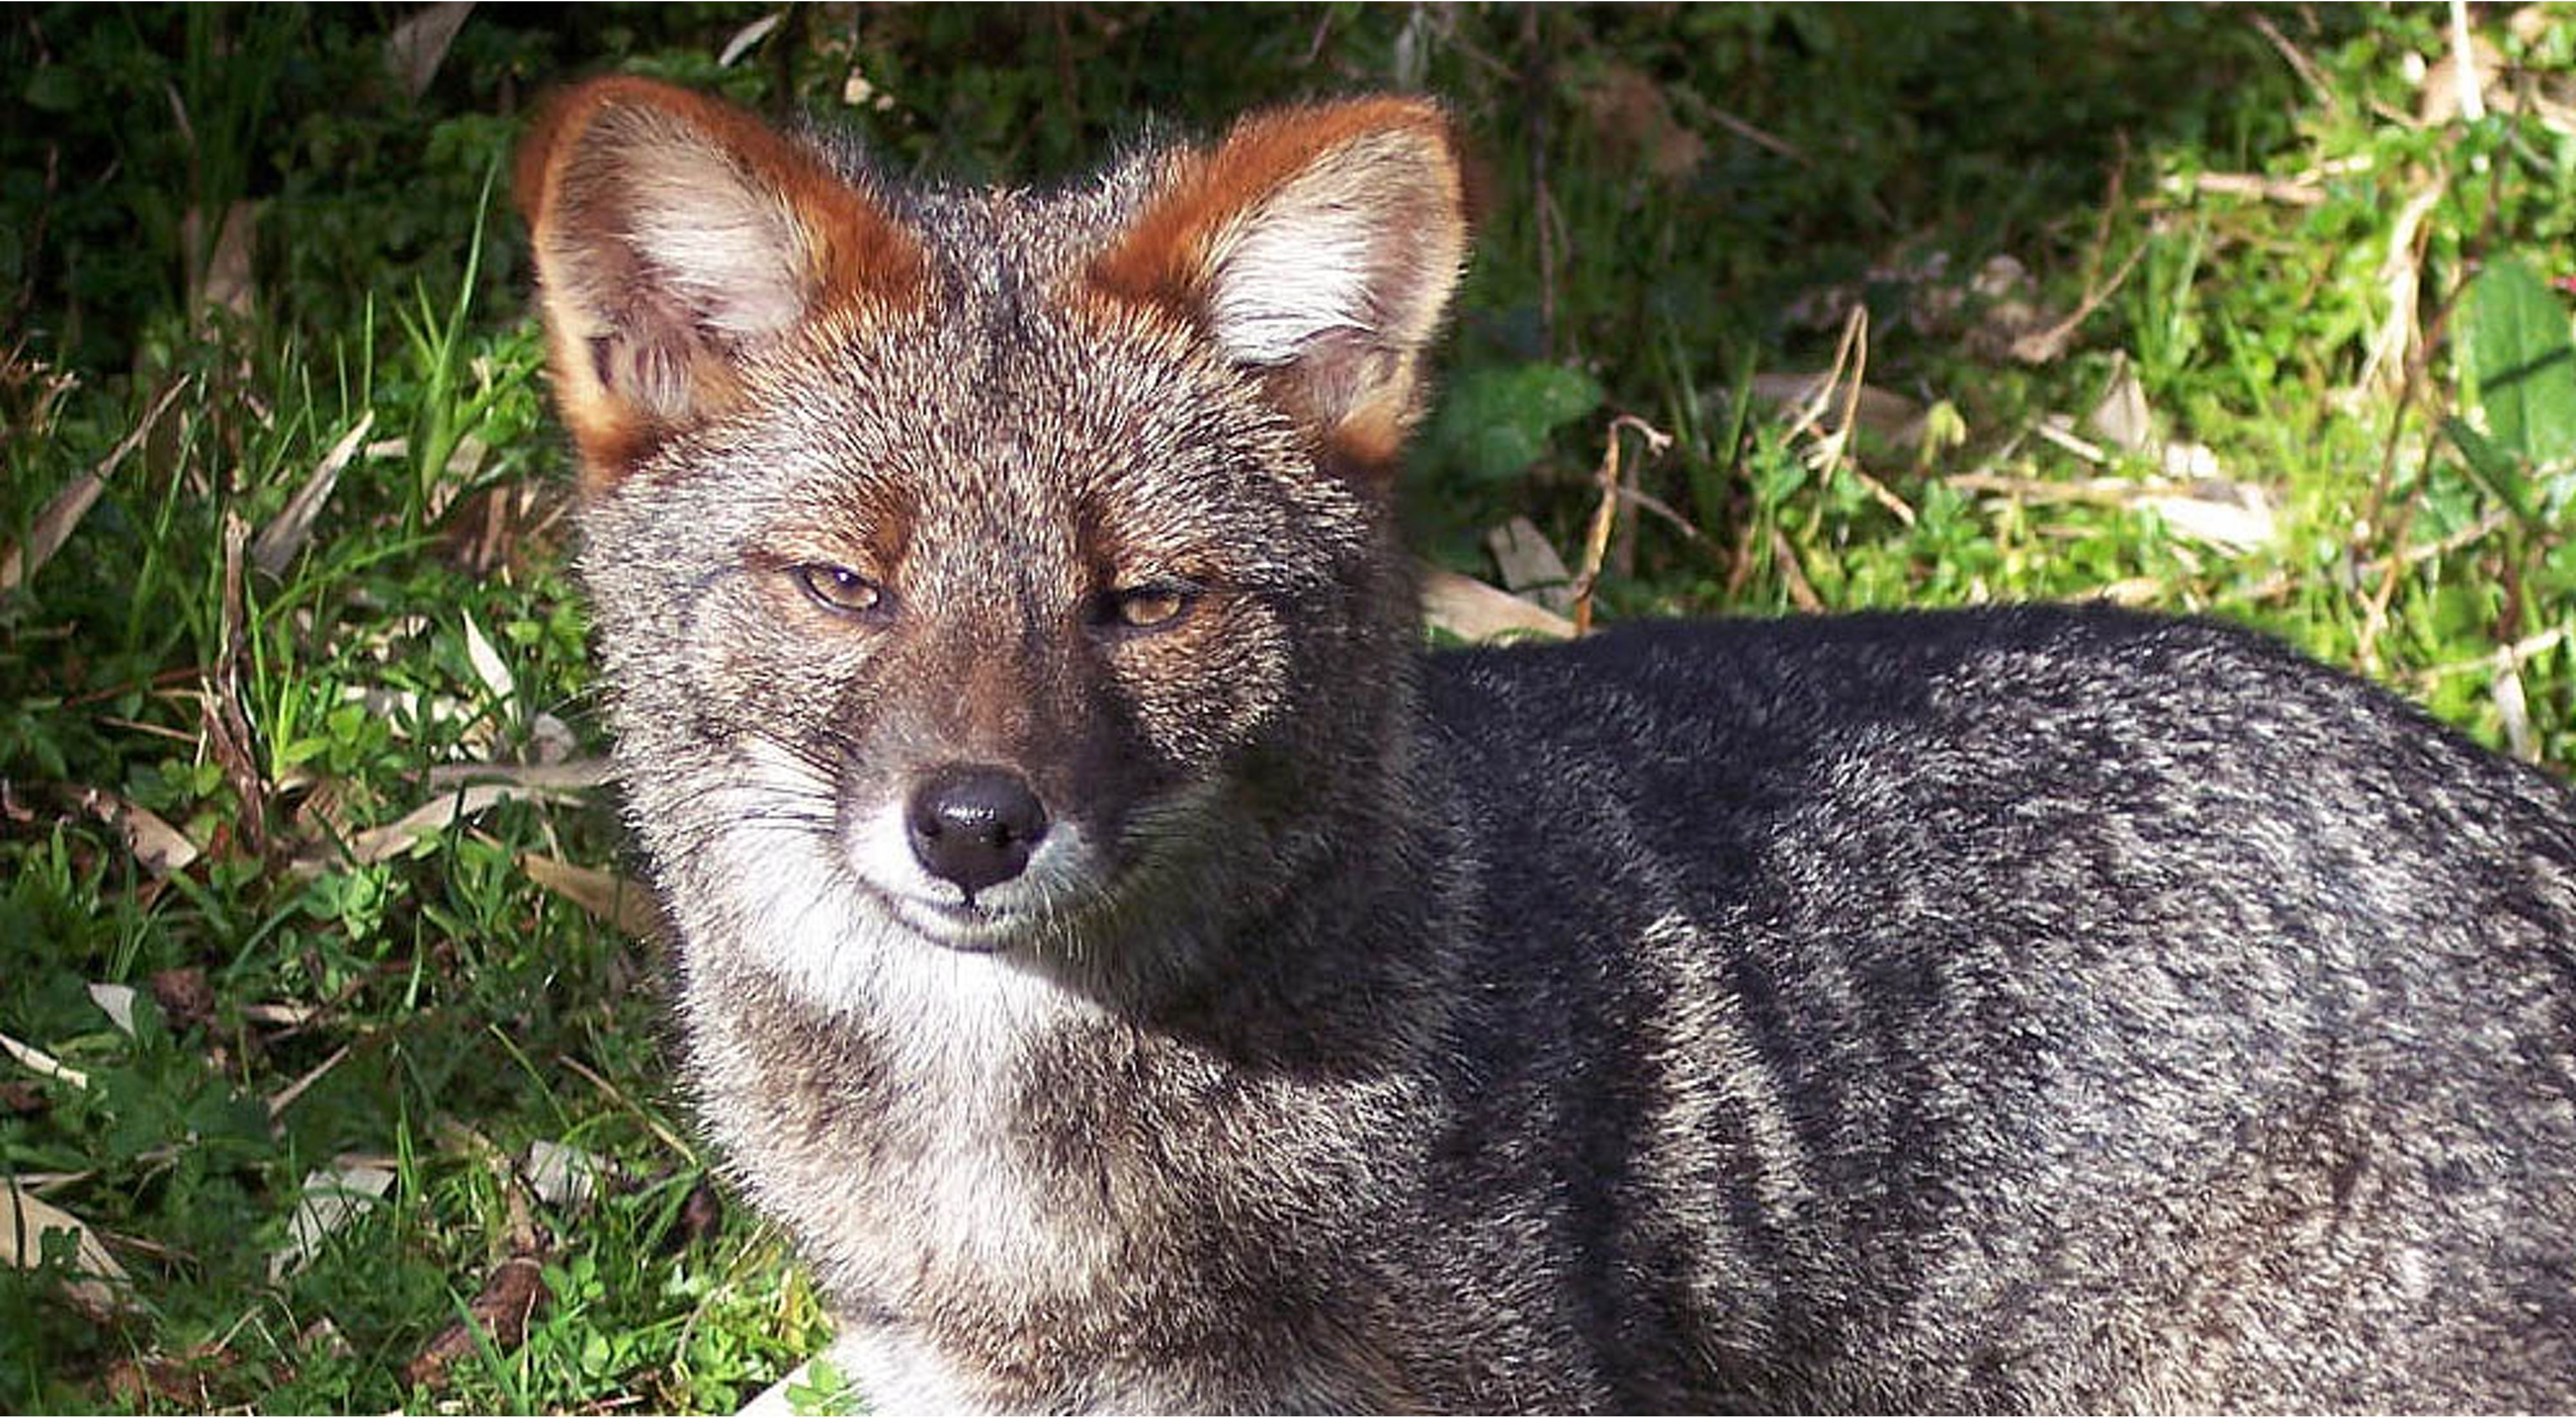 La Reserva Costera Valdiviana protege los últimos bosques hogar de una especie endémica de Chile que se creía extinta: el zorro de Darwin.